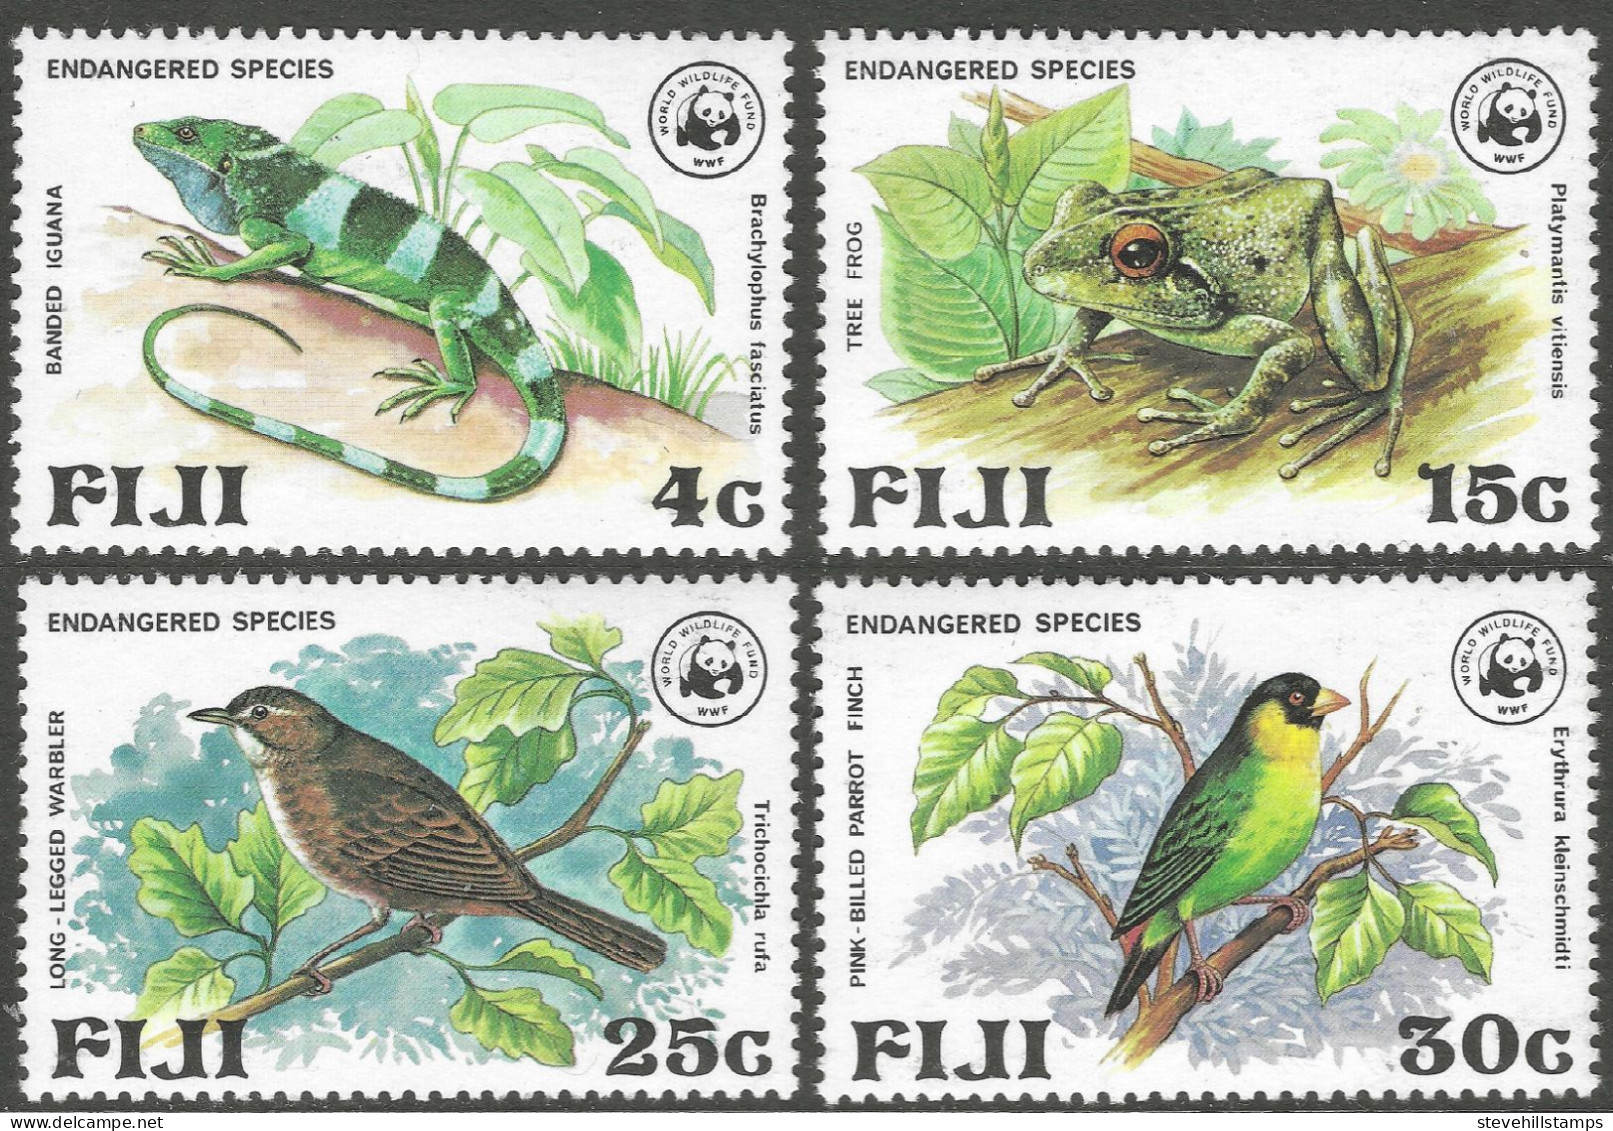 Fiji. 1979 Endangered Life. MH Complete Set. SG 564-567 - Fidji (1970-...)